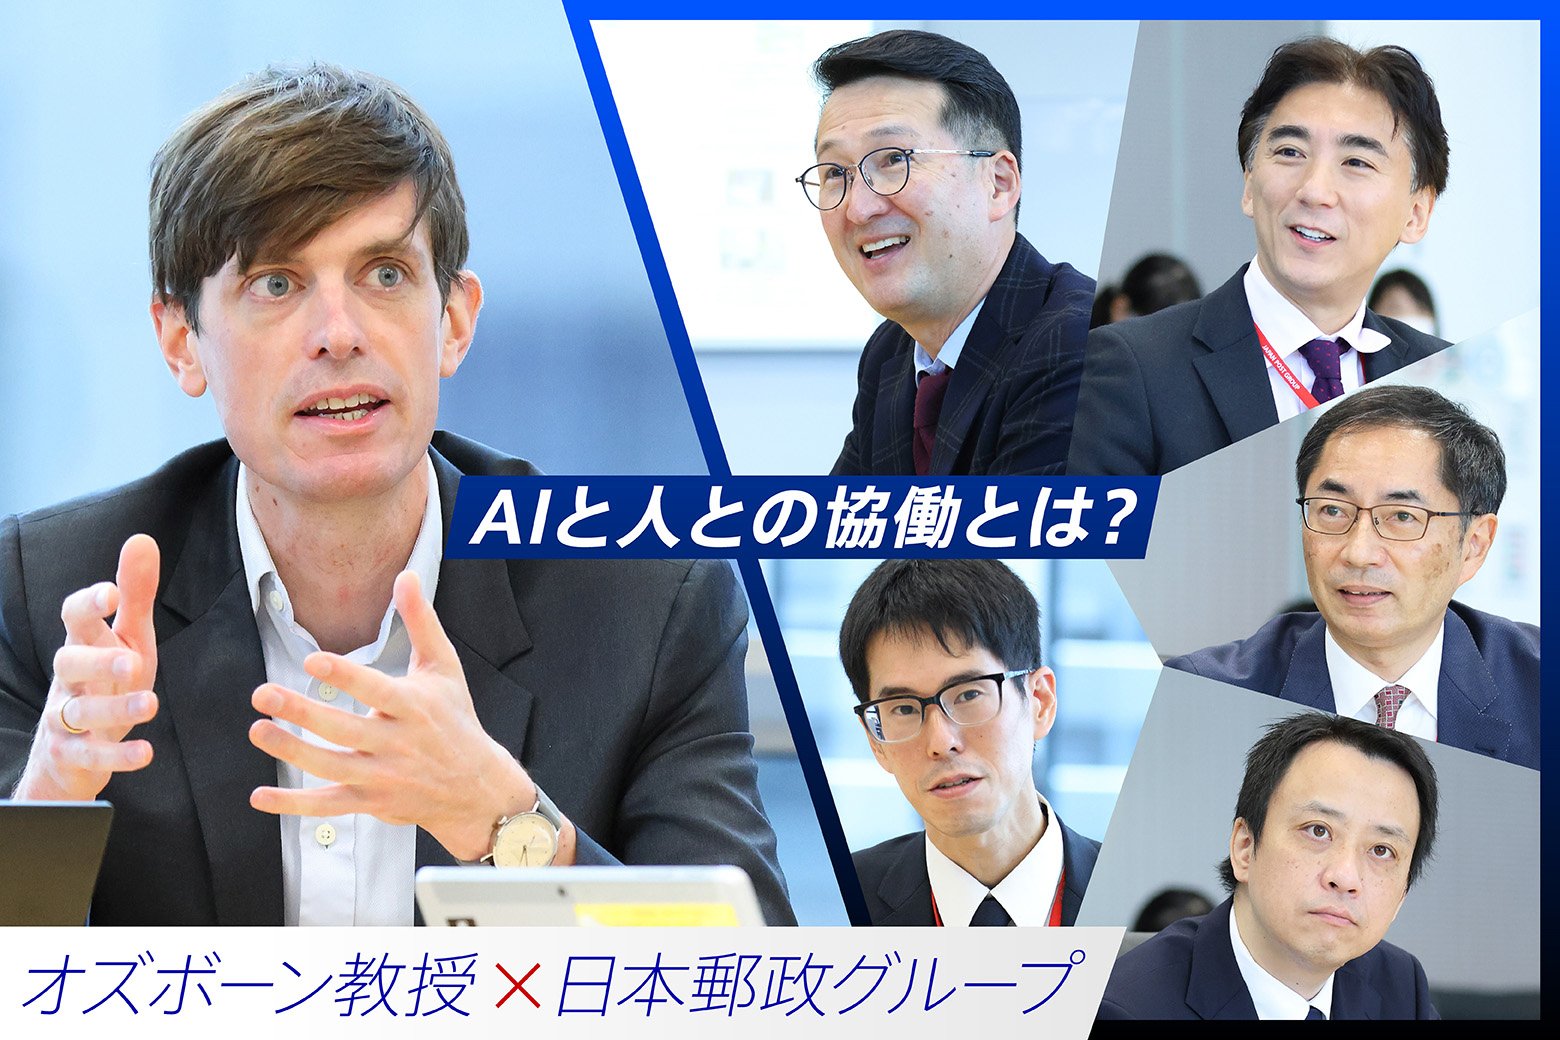 マイケル・オズボーン教授×日本郵政グループ 「AIと人との協働」で目指す未来